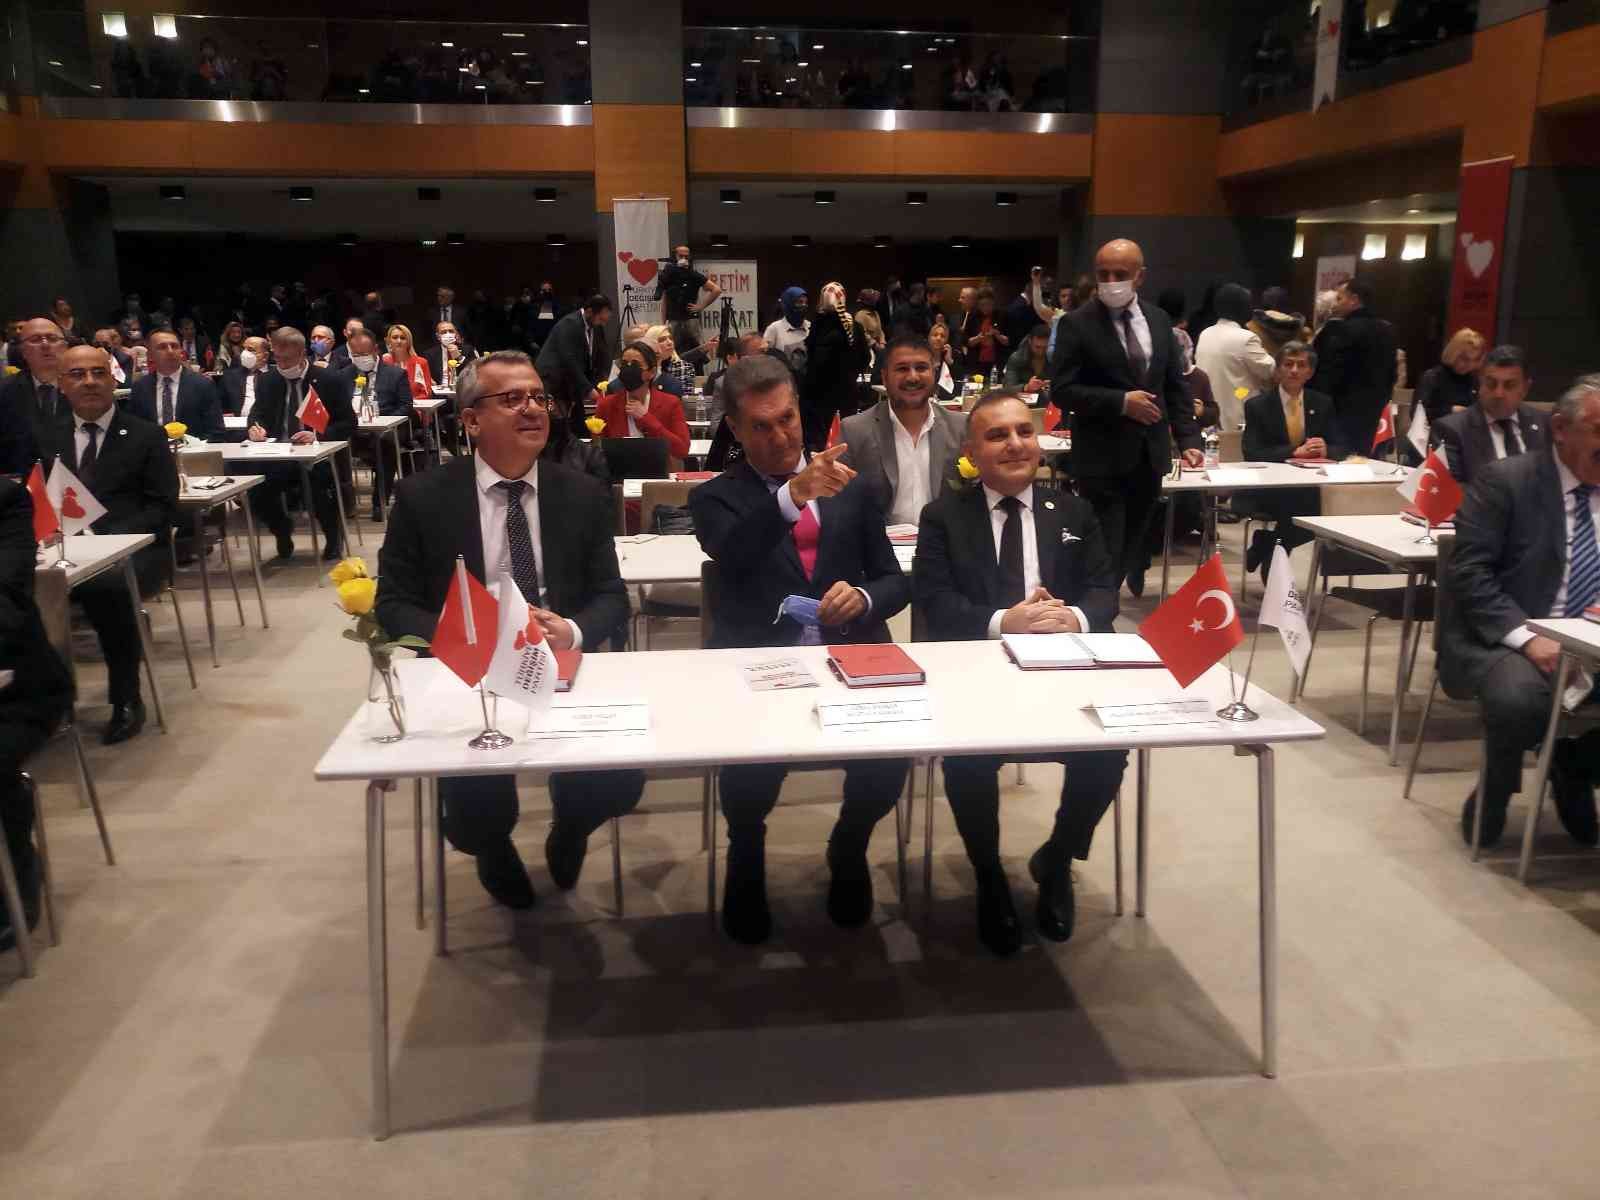 Türkiye Değişim Partisi ’gölge Hazine ve Maliye Bakanı’nı açıkladı #istanbul